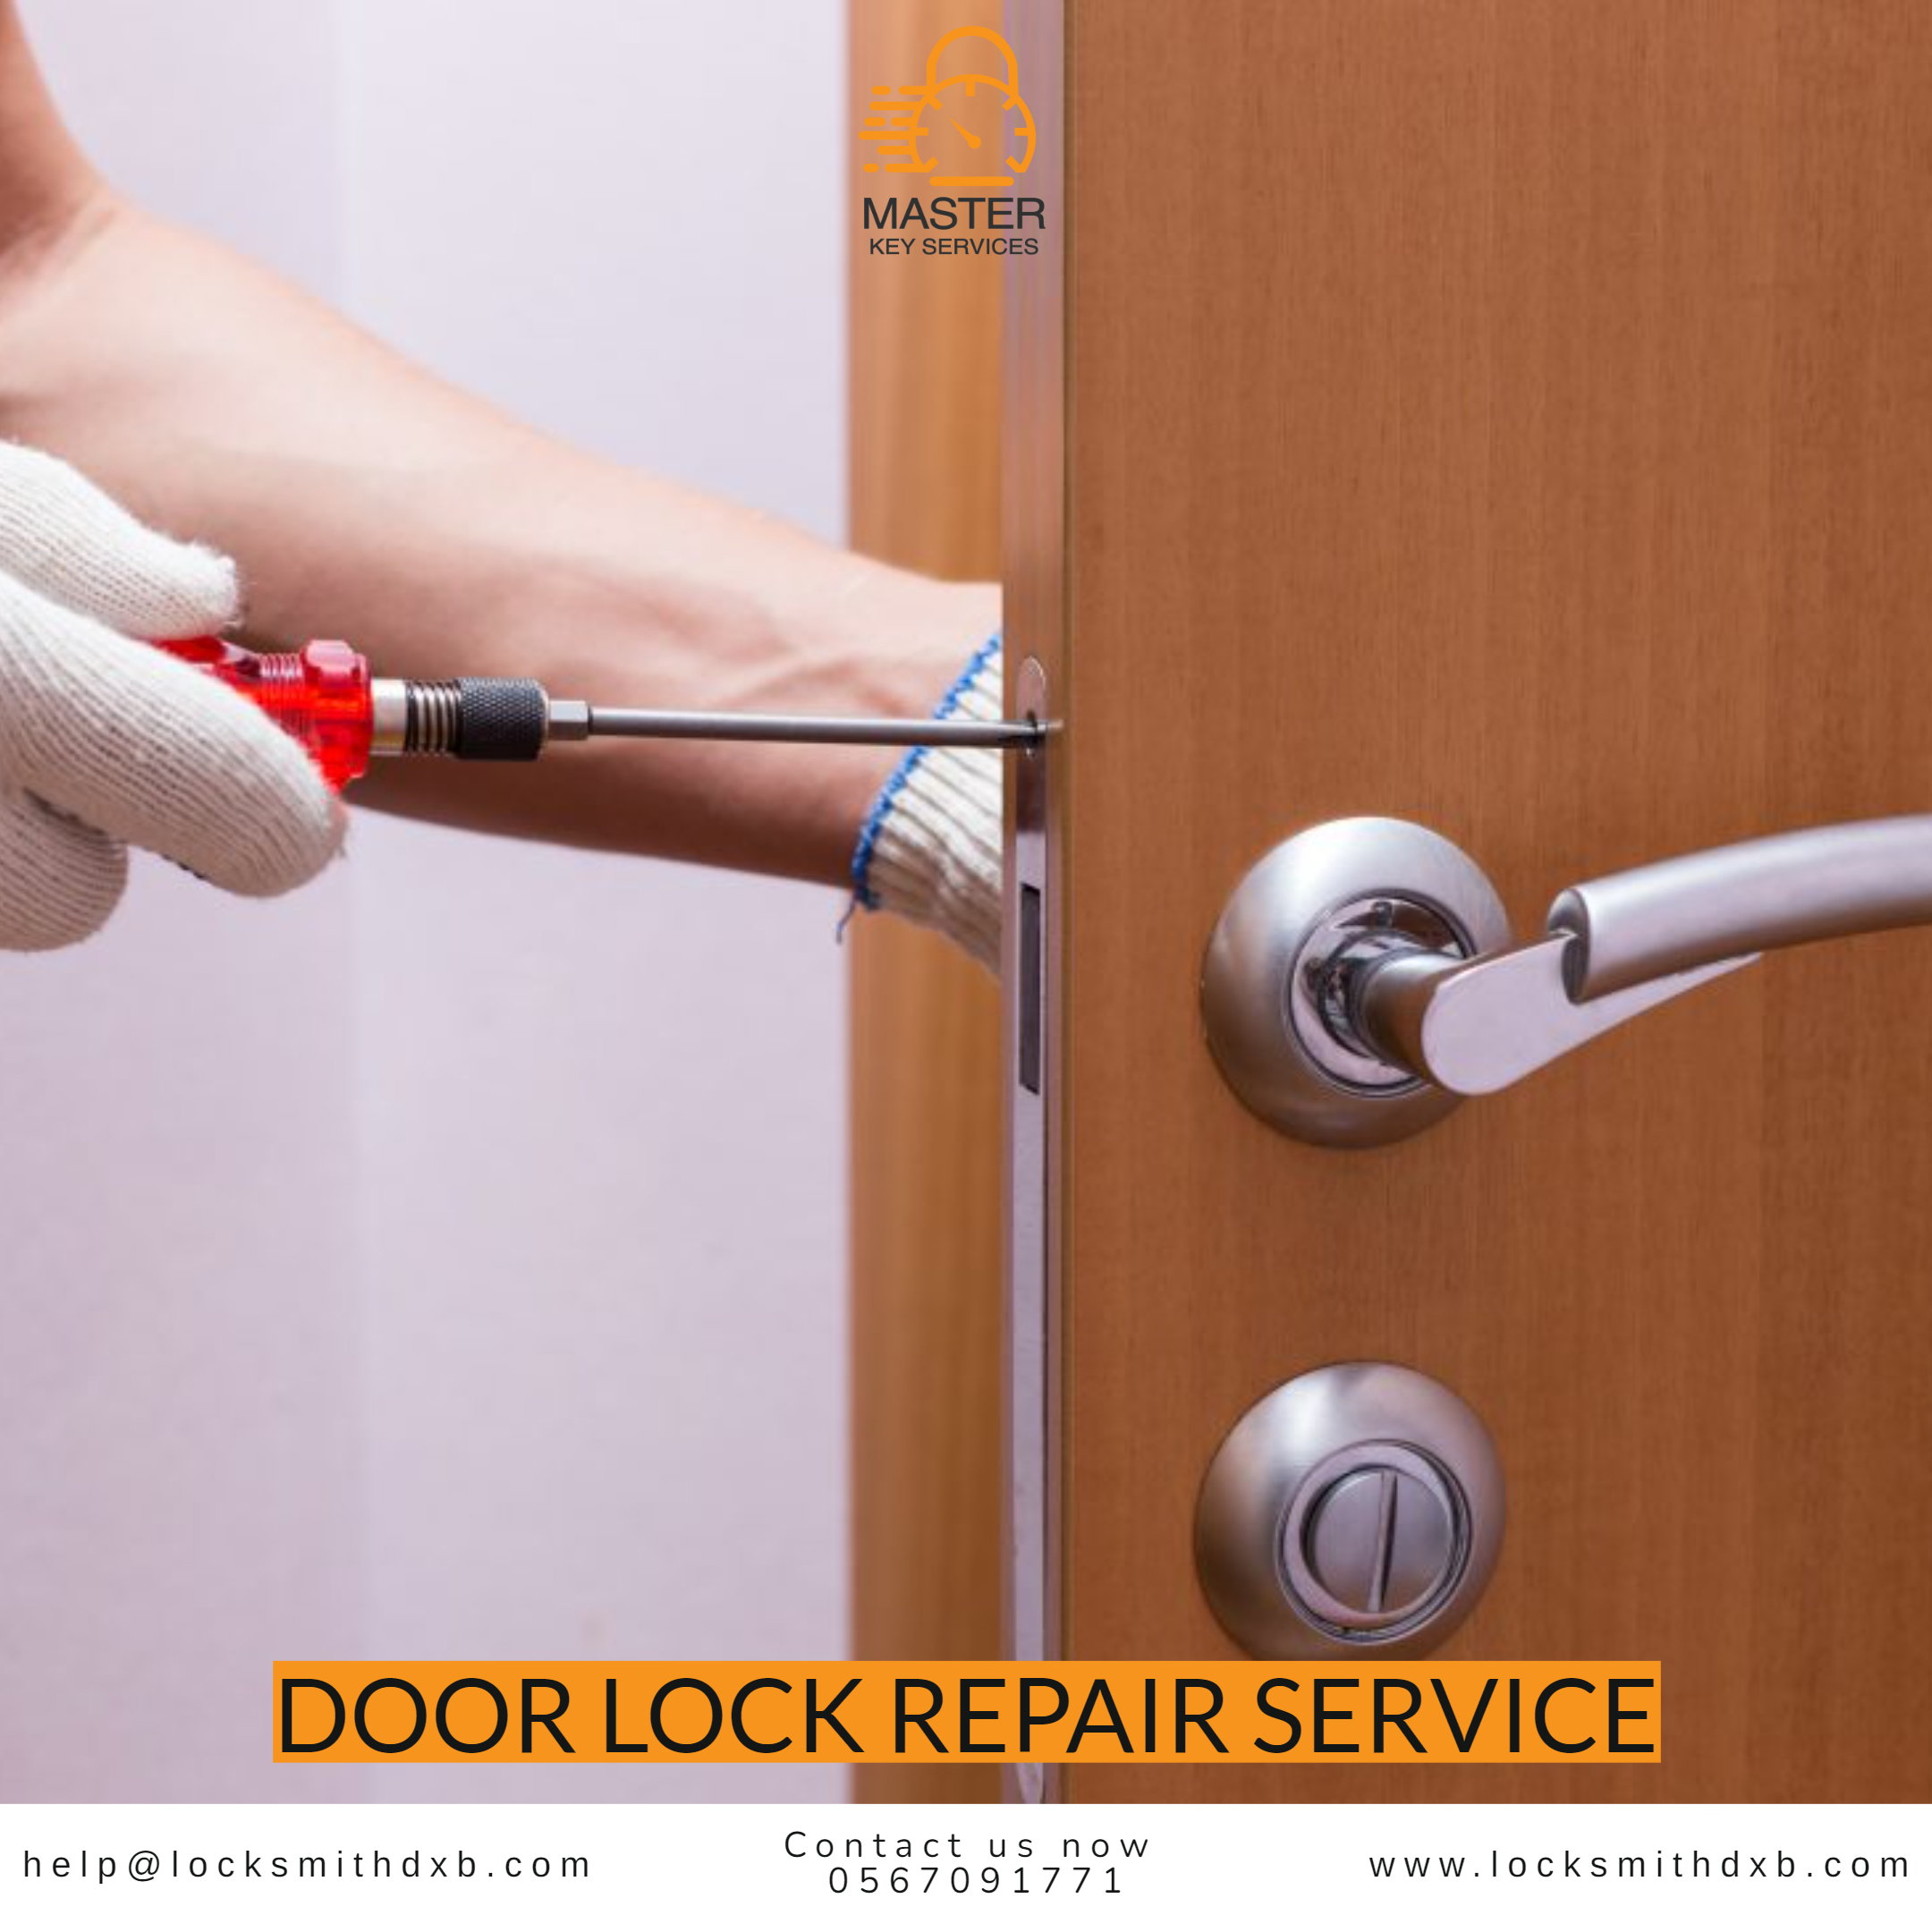 Door lock repair service